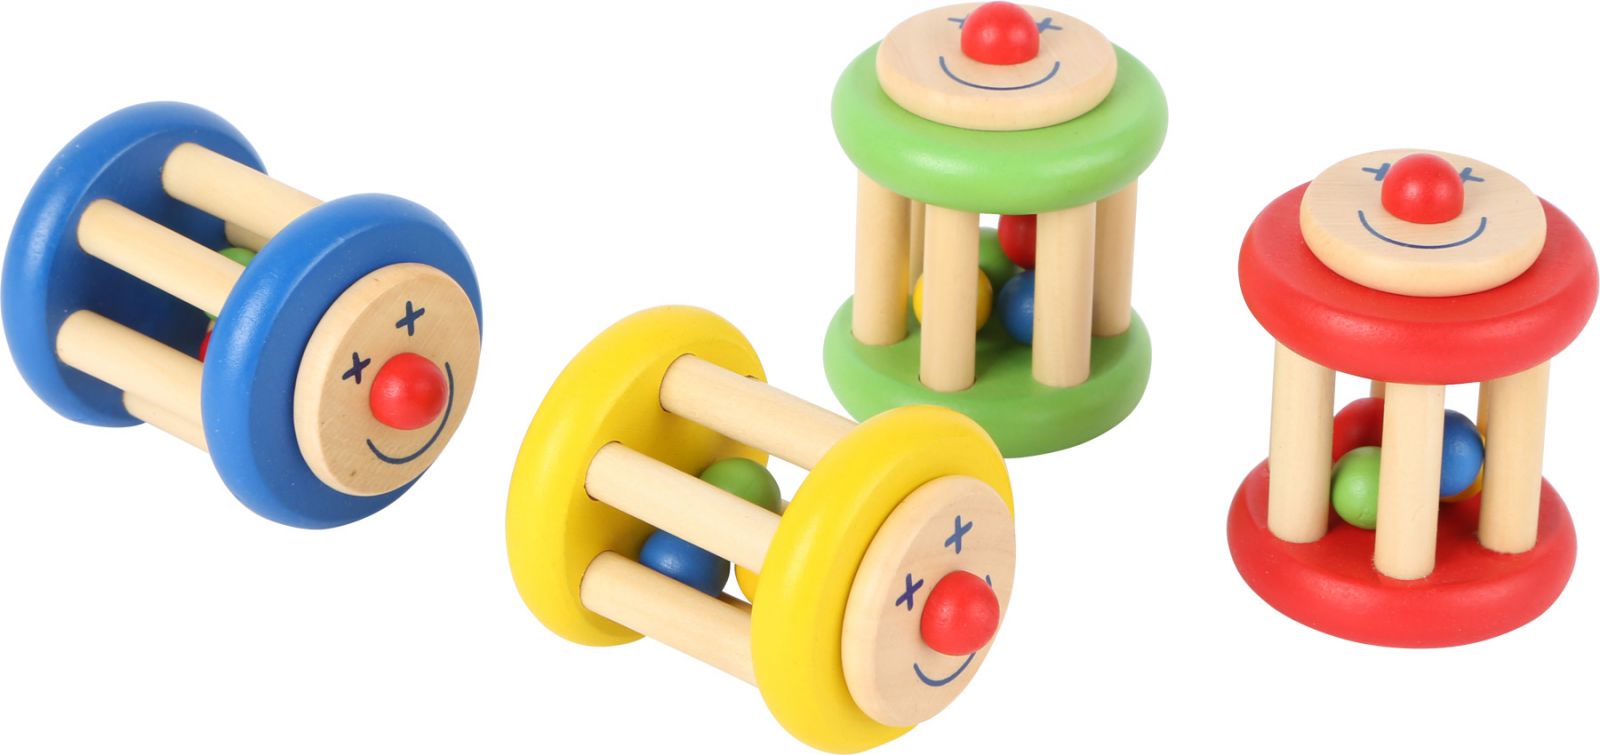 Dřevěné hračky Displej- Dřevěné chrastítko - Klaun 1 ks červená Small foot by Legler